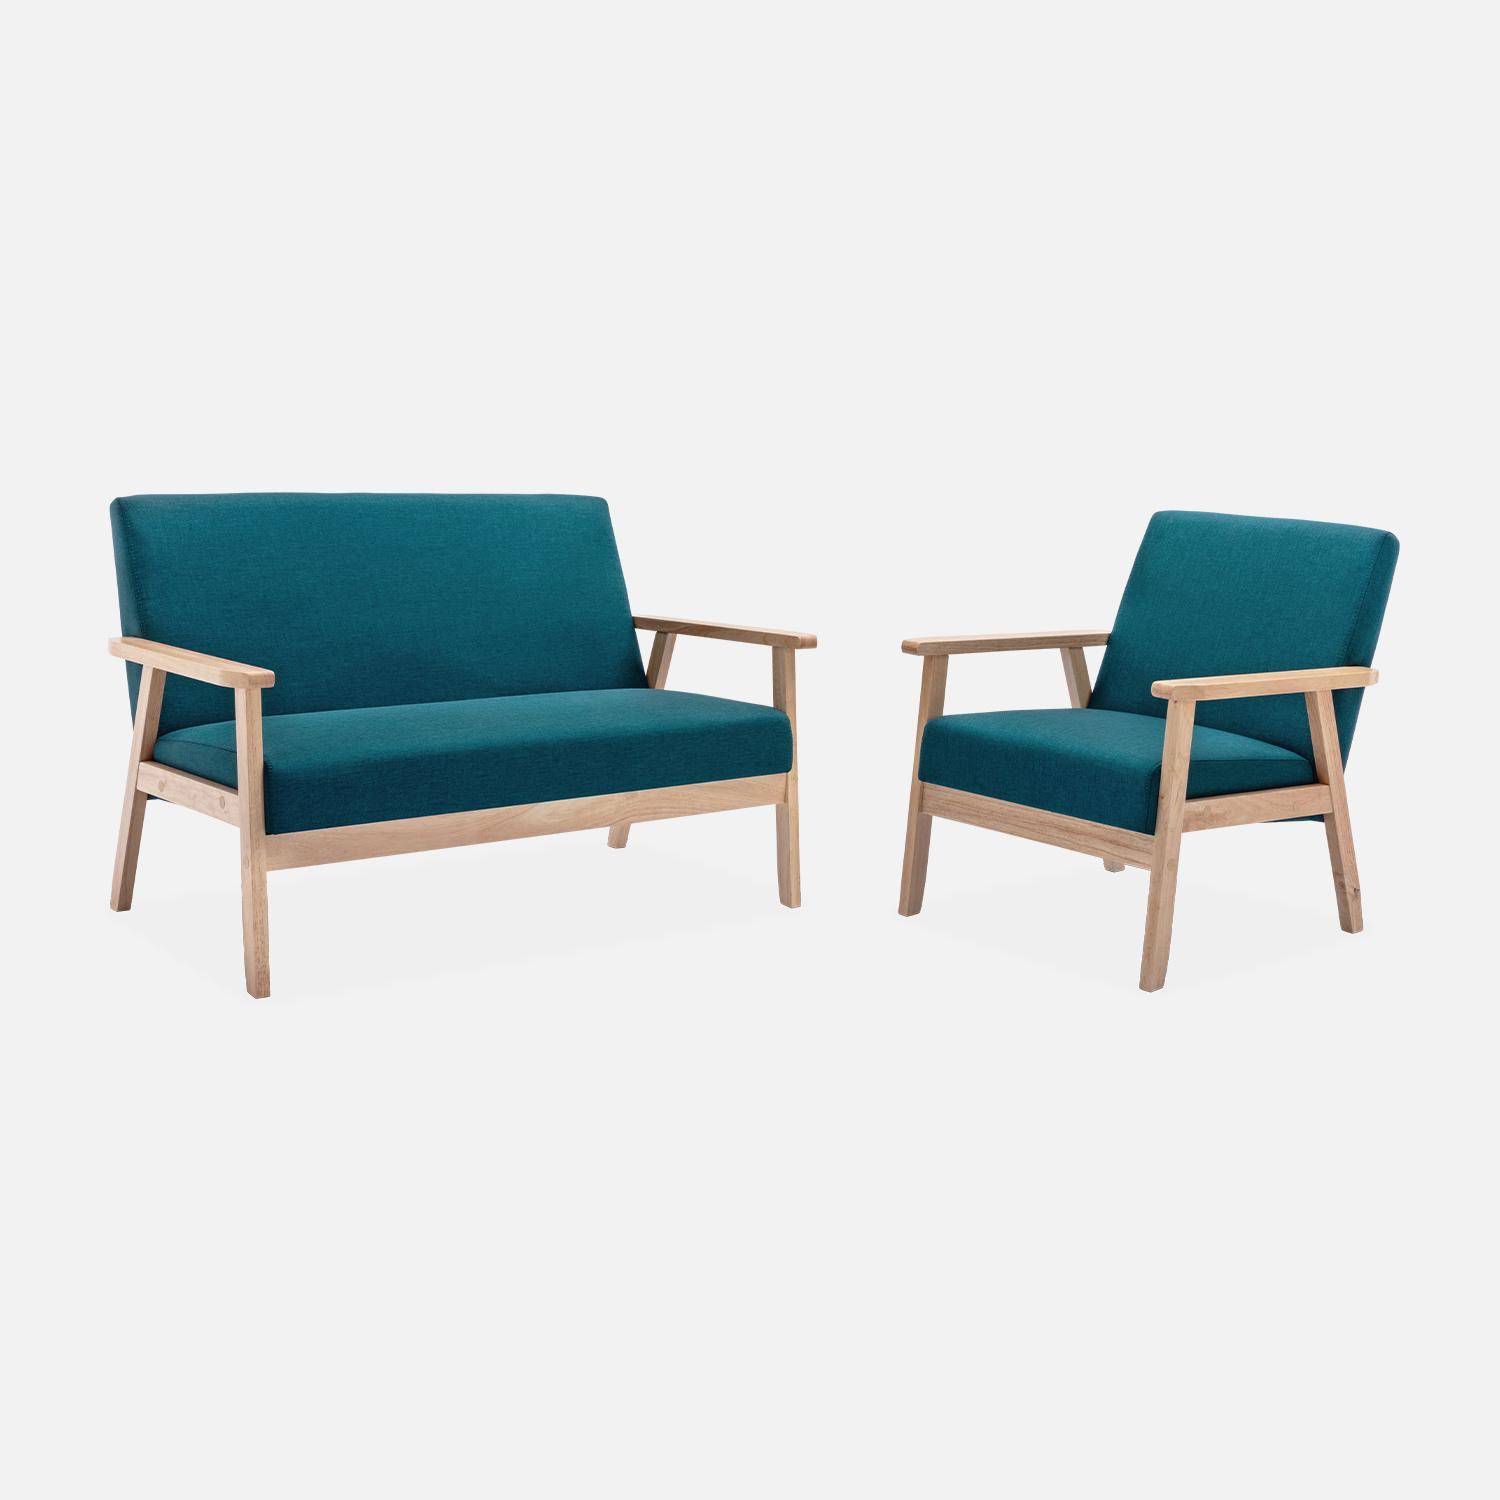 Banquette et fauteuil scandinave en bois et tissu bleu pétrole L 114 x l 69,5 x H 73cm,sweeek,Photo2